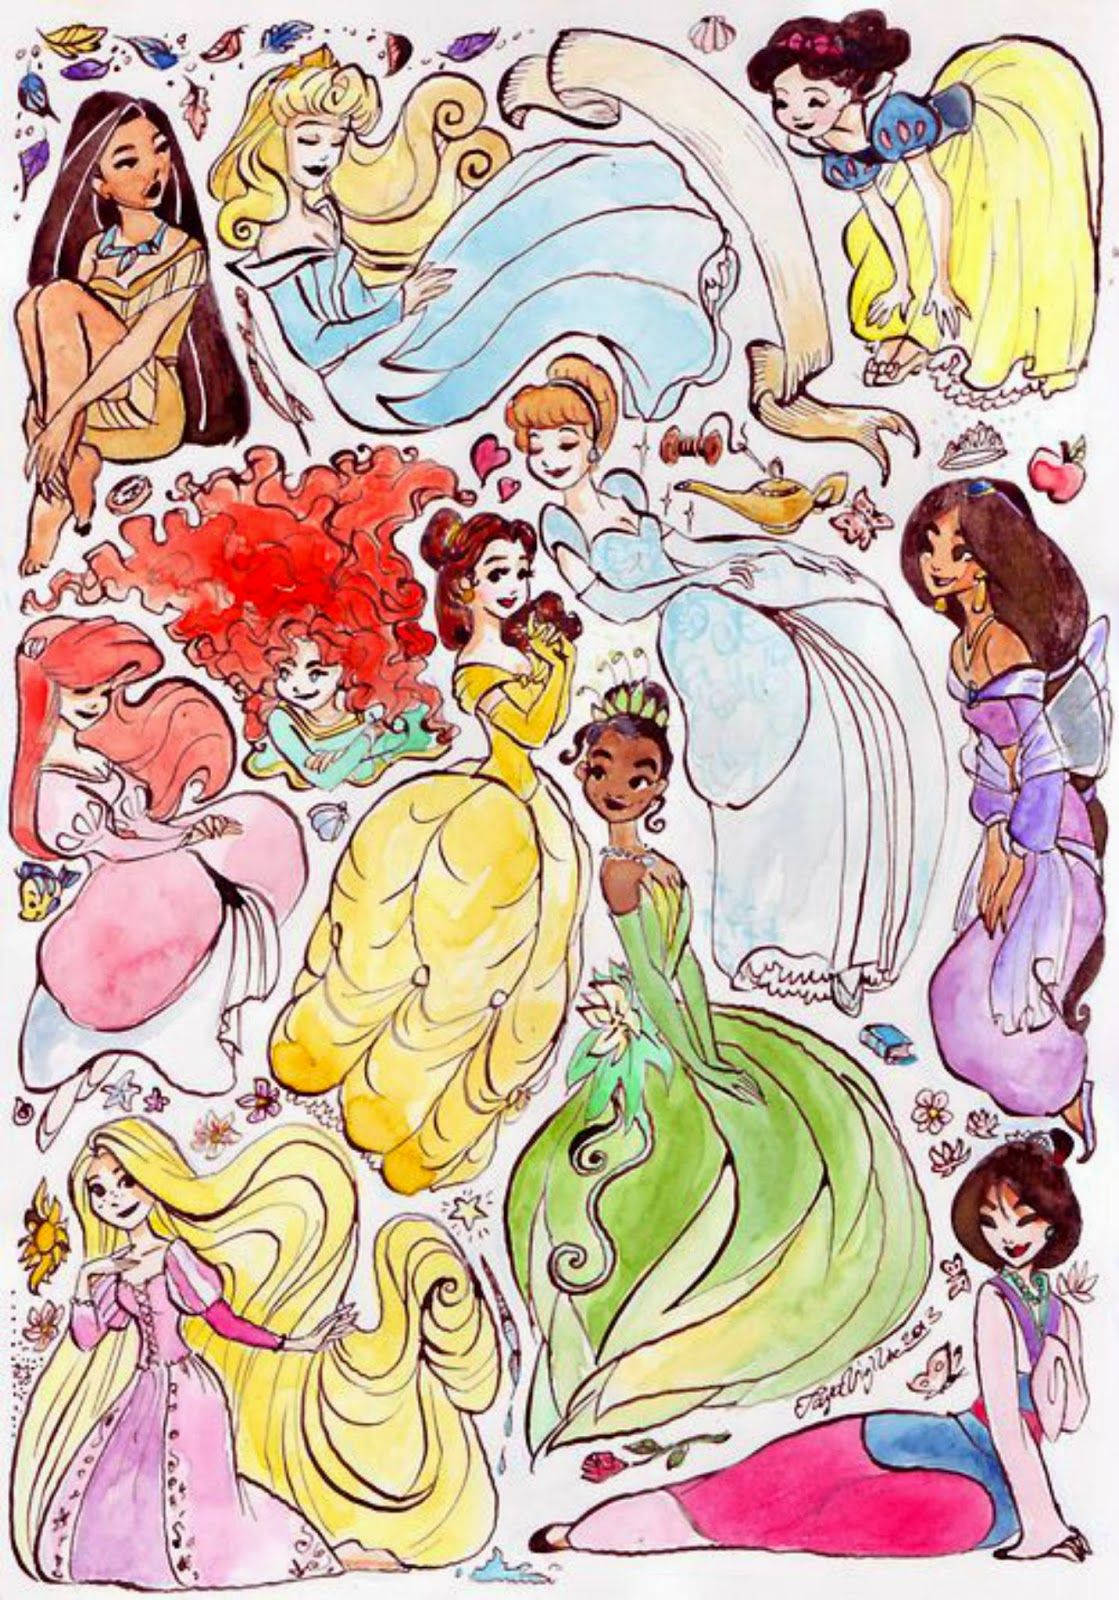 Free download art disney iphone collection vintage wallpaper Rapunzel  princess ariel [426x640] for your Desktop, Mobile & Tablet | Explore 50+  Disney Princess Wallpaper Tumblr | Disney Princess Wallpaper, Disney Princess  Wallpapers,